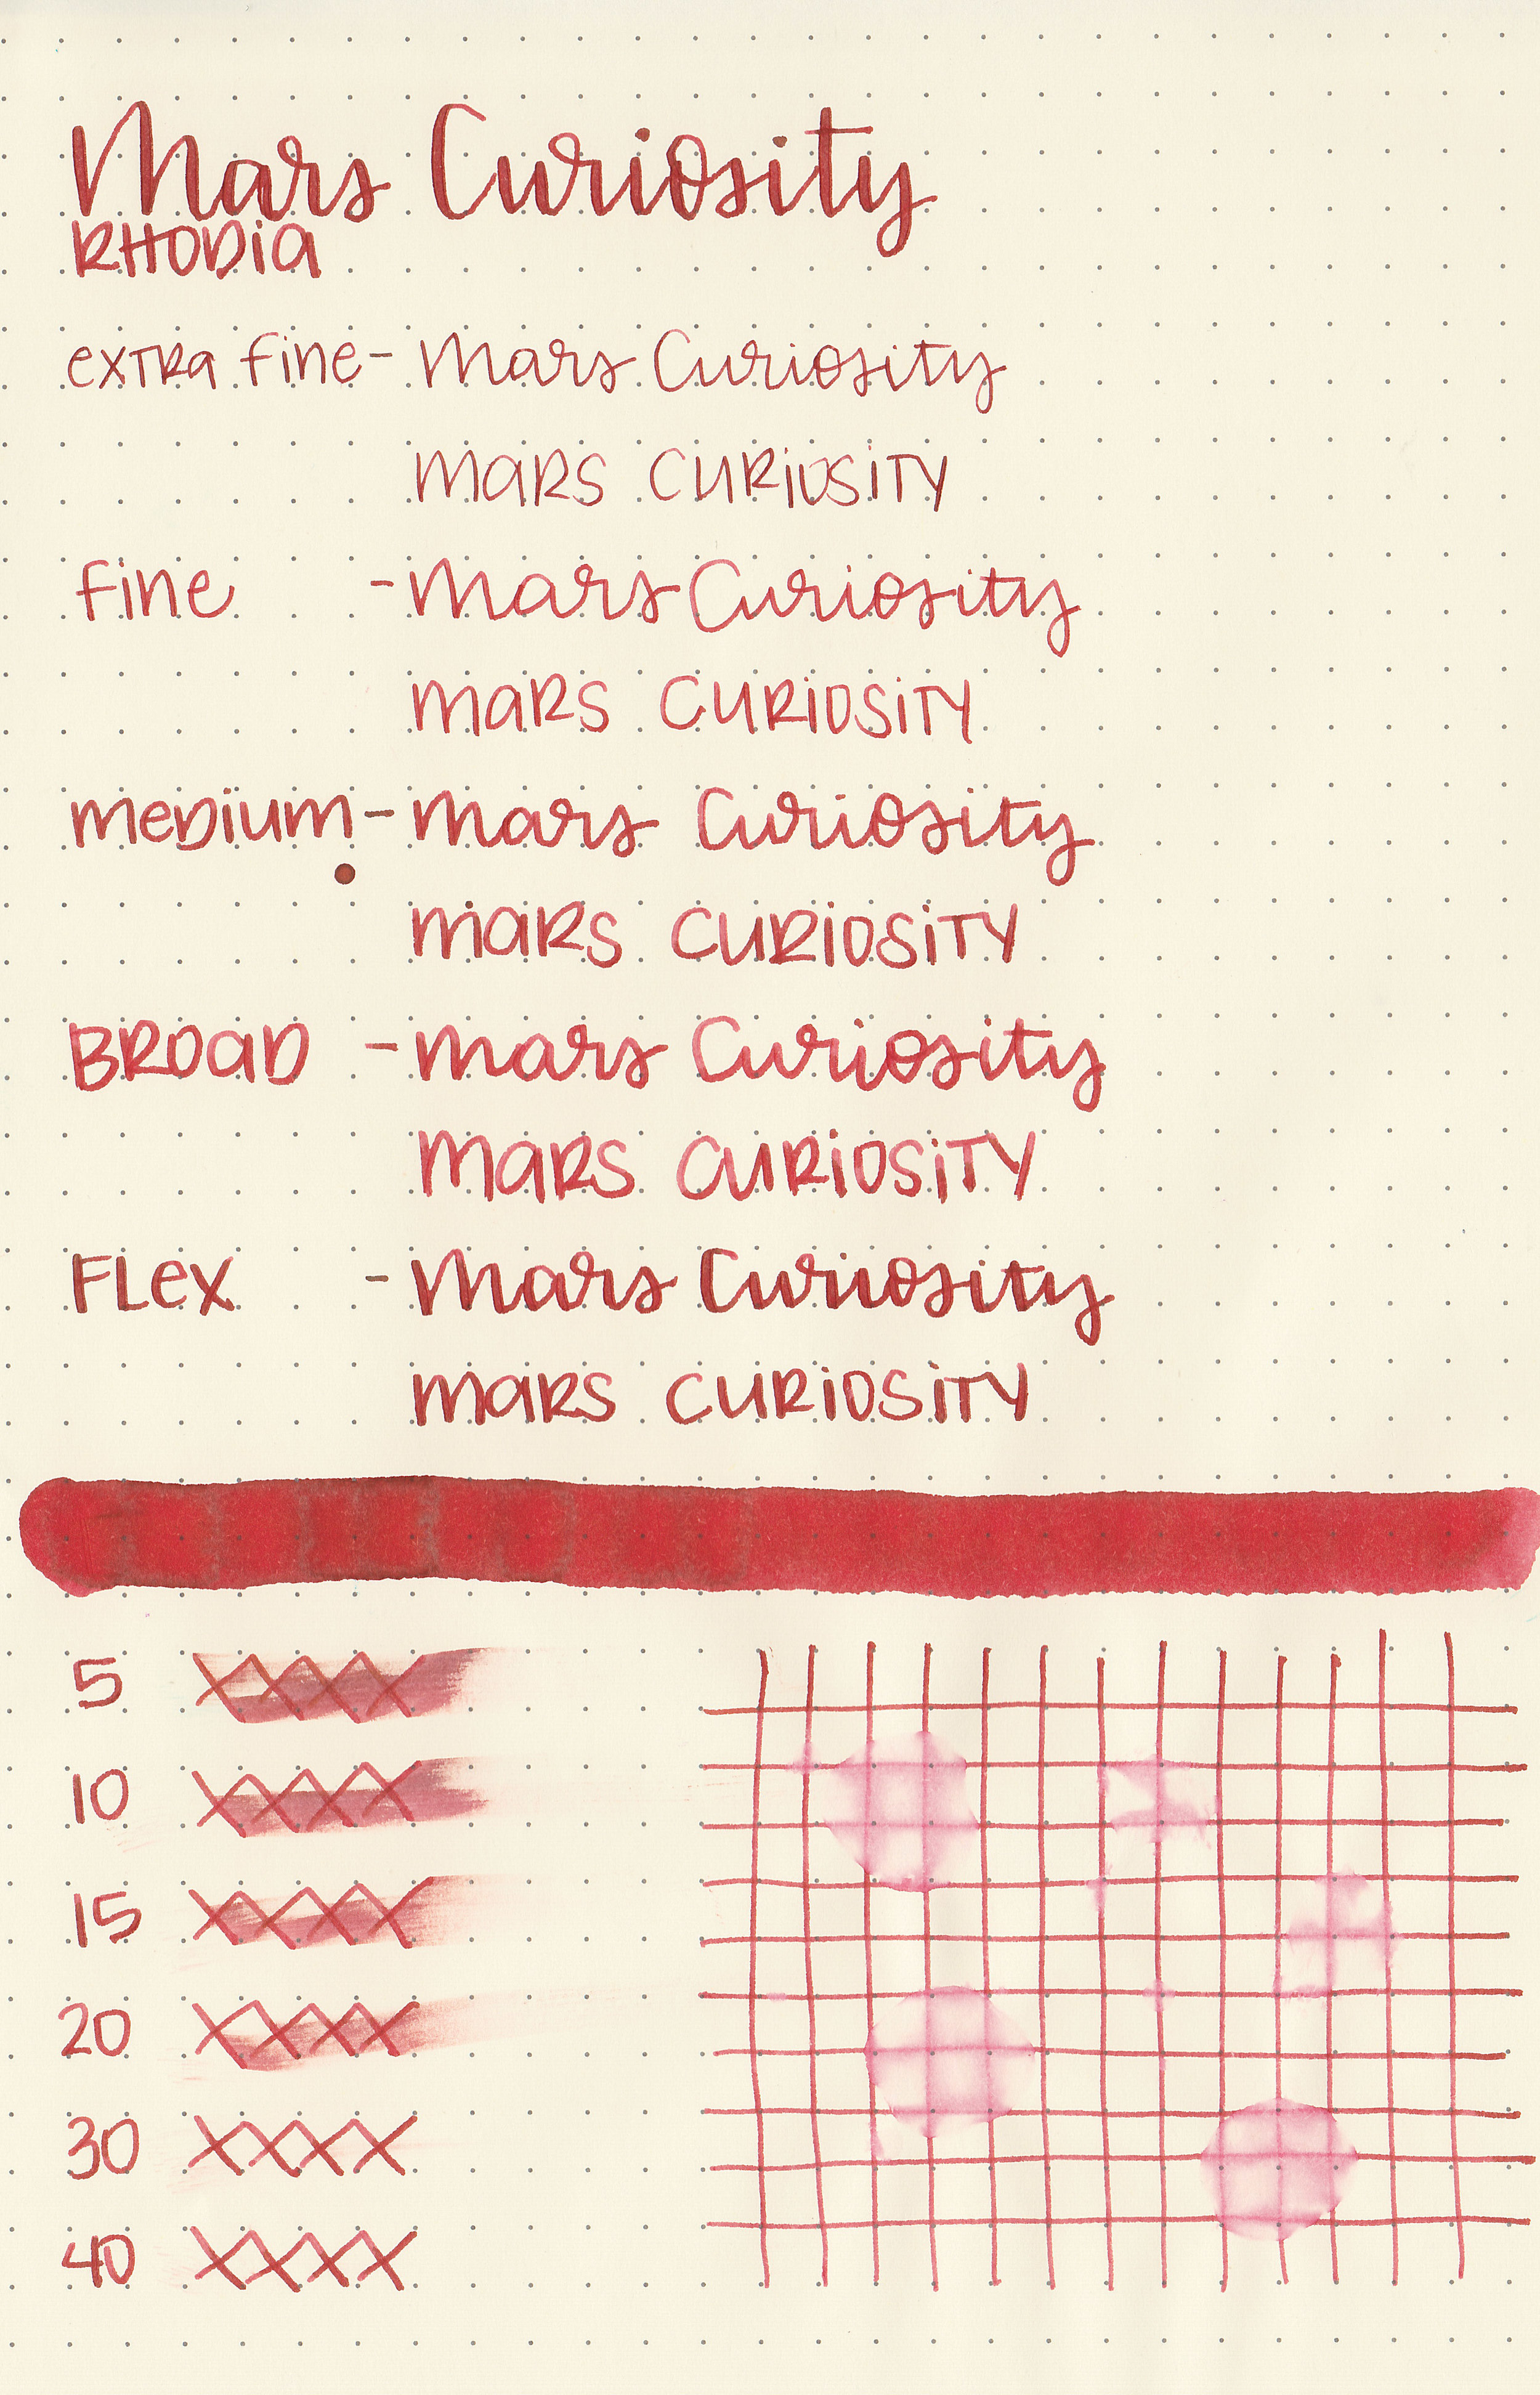 cv-mars-curiosity-6.jpg